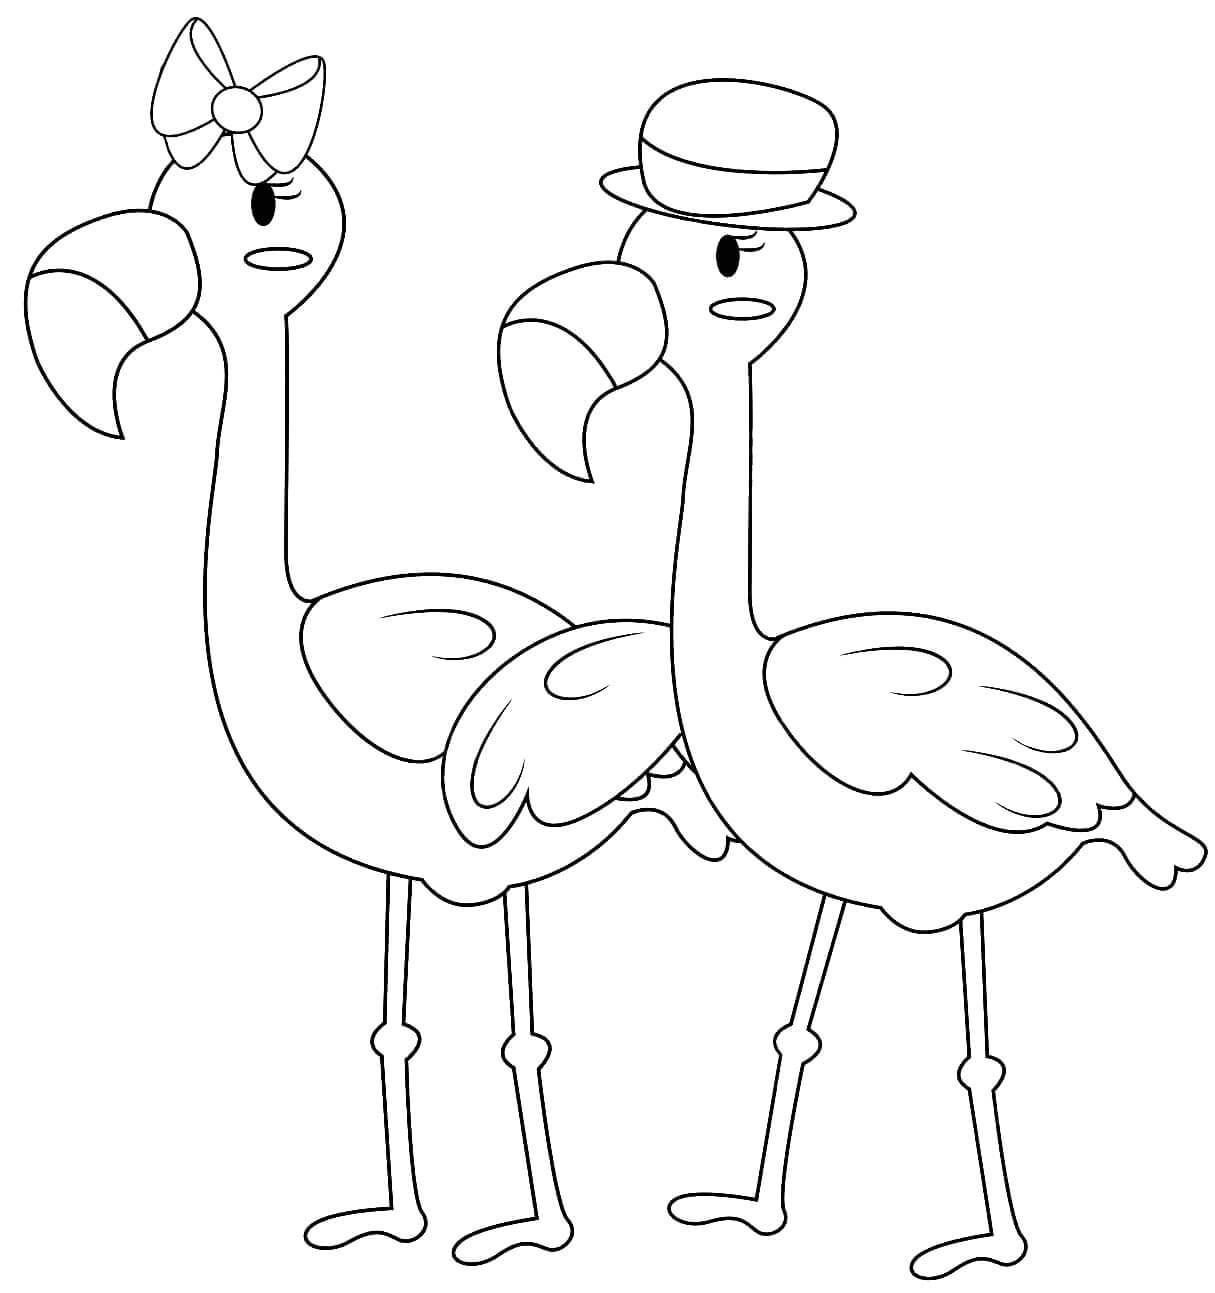 Sr. Flamingo e Sra. Flamingo para colorir